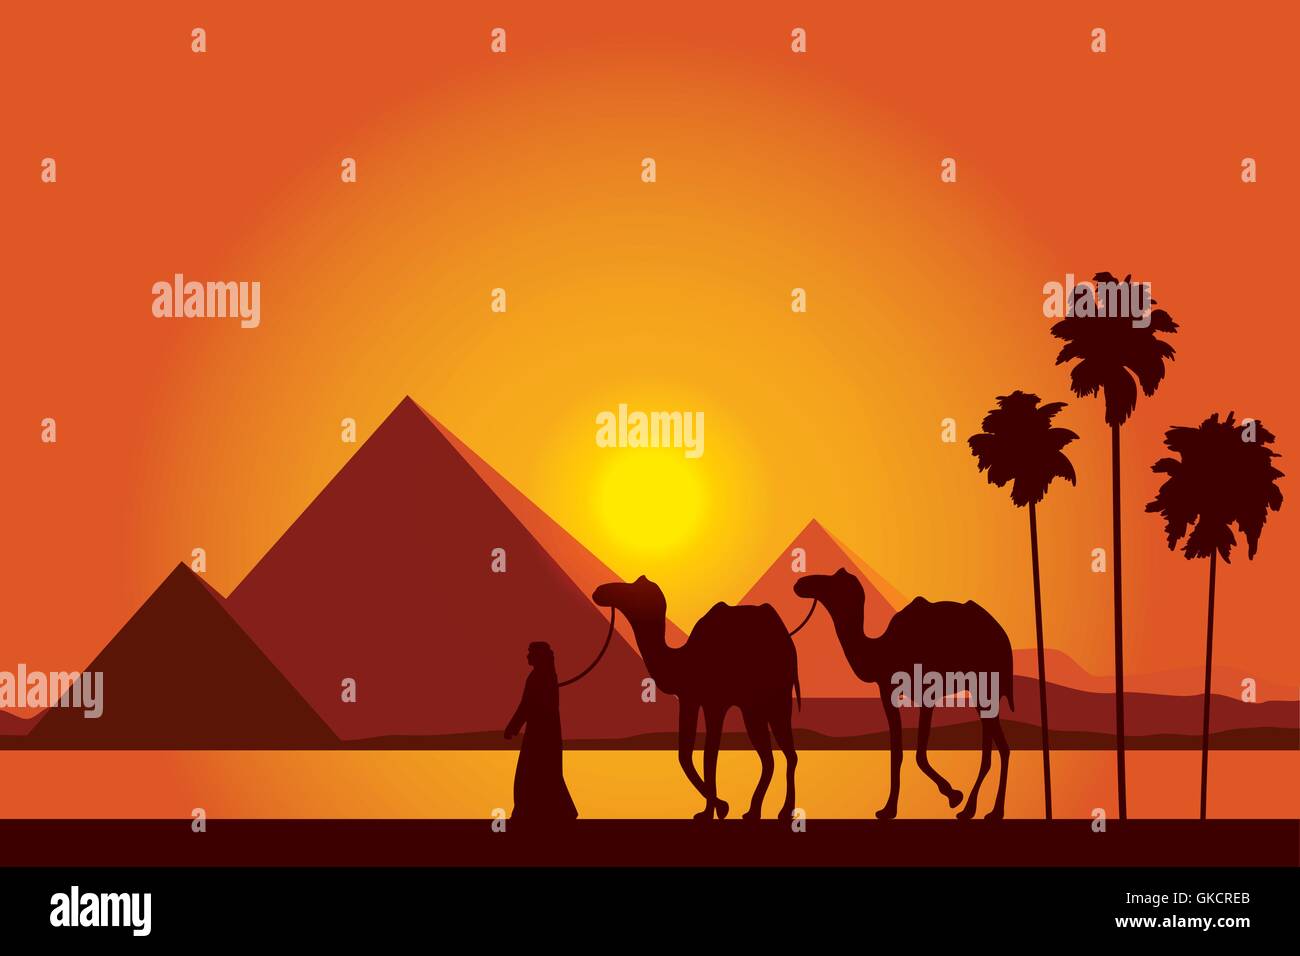 Ägypten-Pyramiden mit Kamel-Karawane auf Sonnenuntergang Hintergrund Stock Vektor